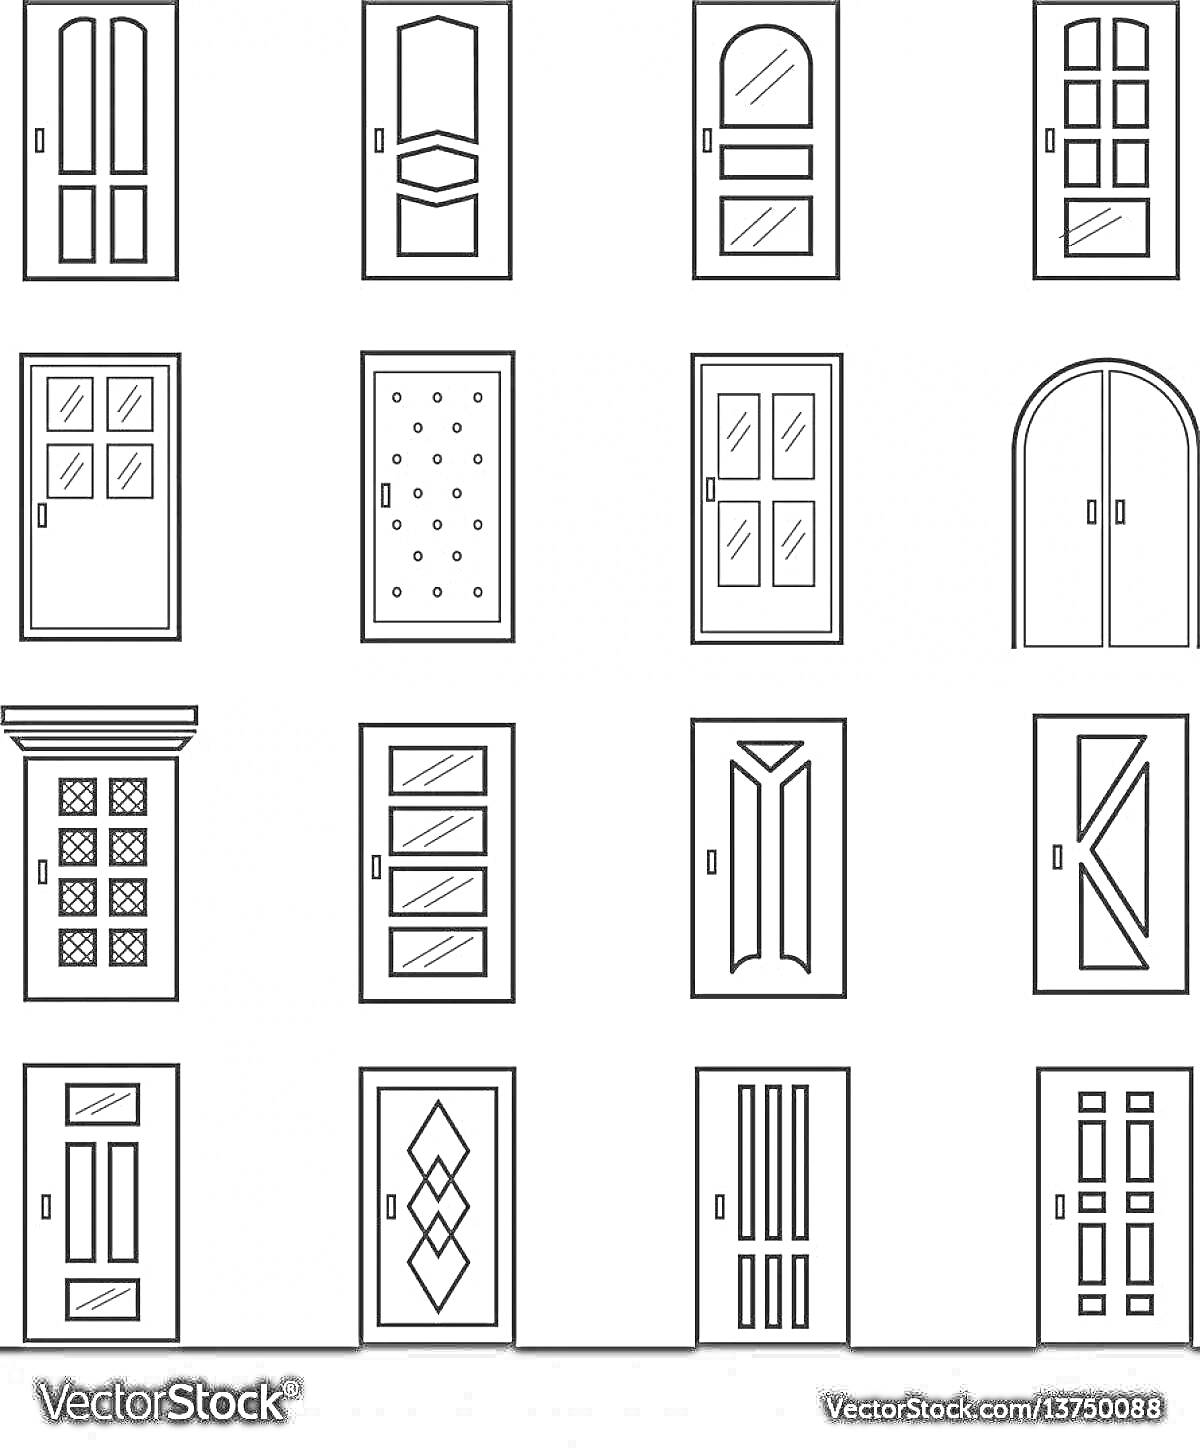 Раскраска Коллекция дверей с различными дизайнами и формами